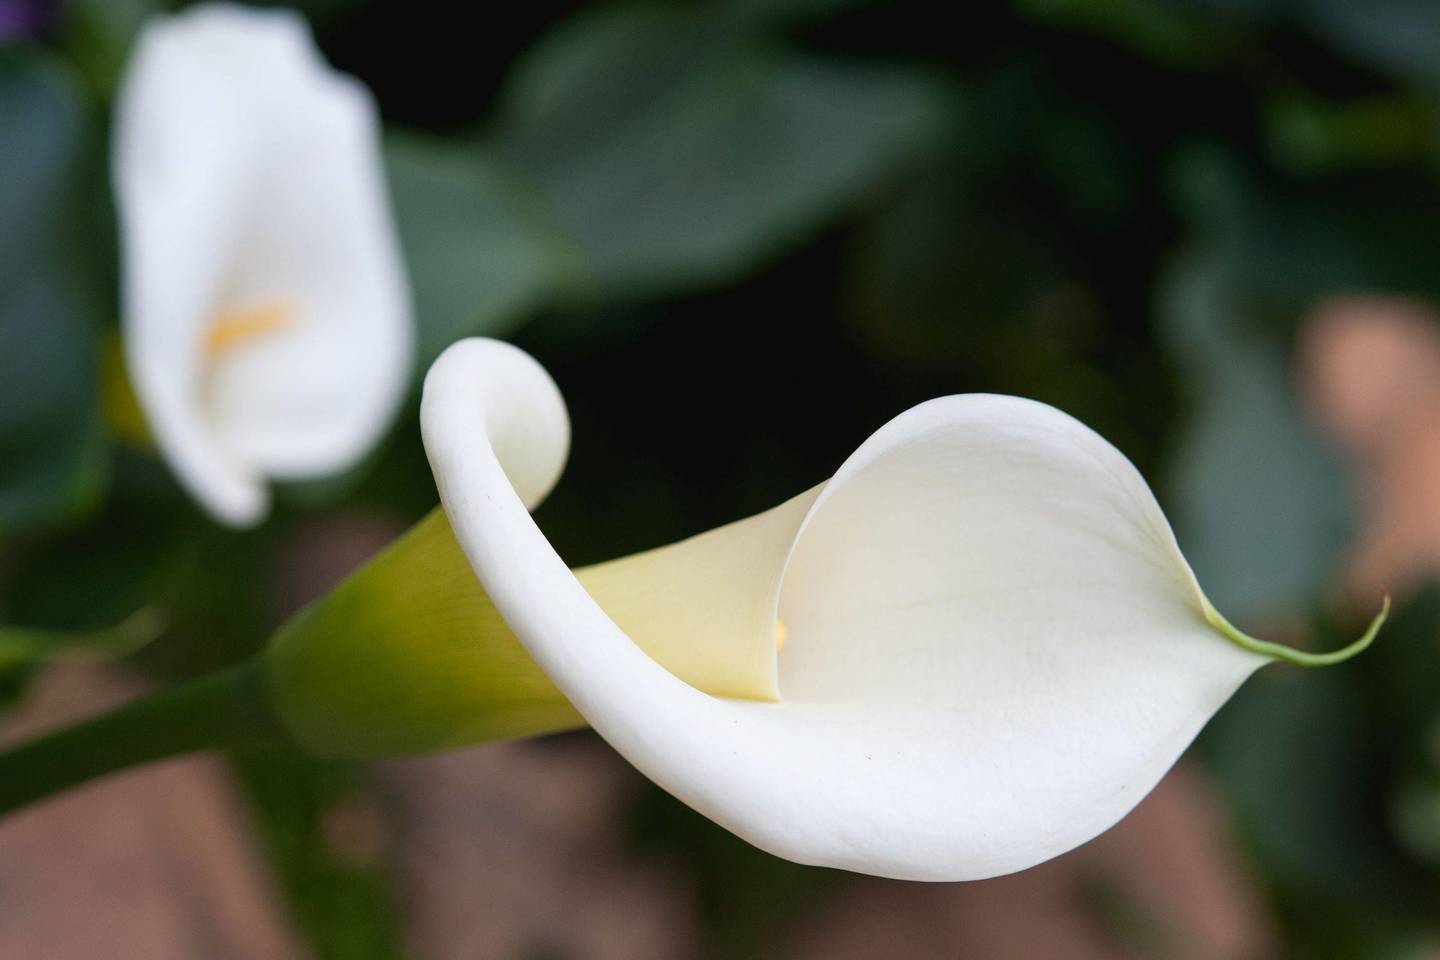  Vietoje didžiulių, užuojautos žodžiais apipintų vainikų, vis dažniau prašoma atnešti paprastą baltos gėlės žiedą.<br> 123rf nuotr.